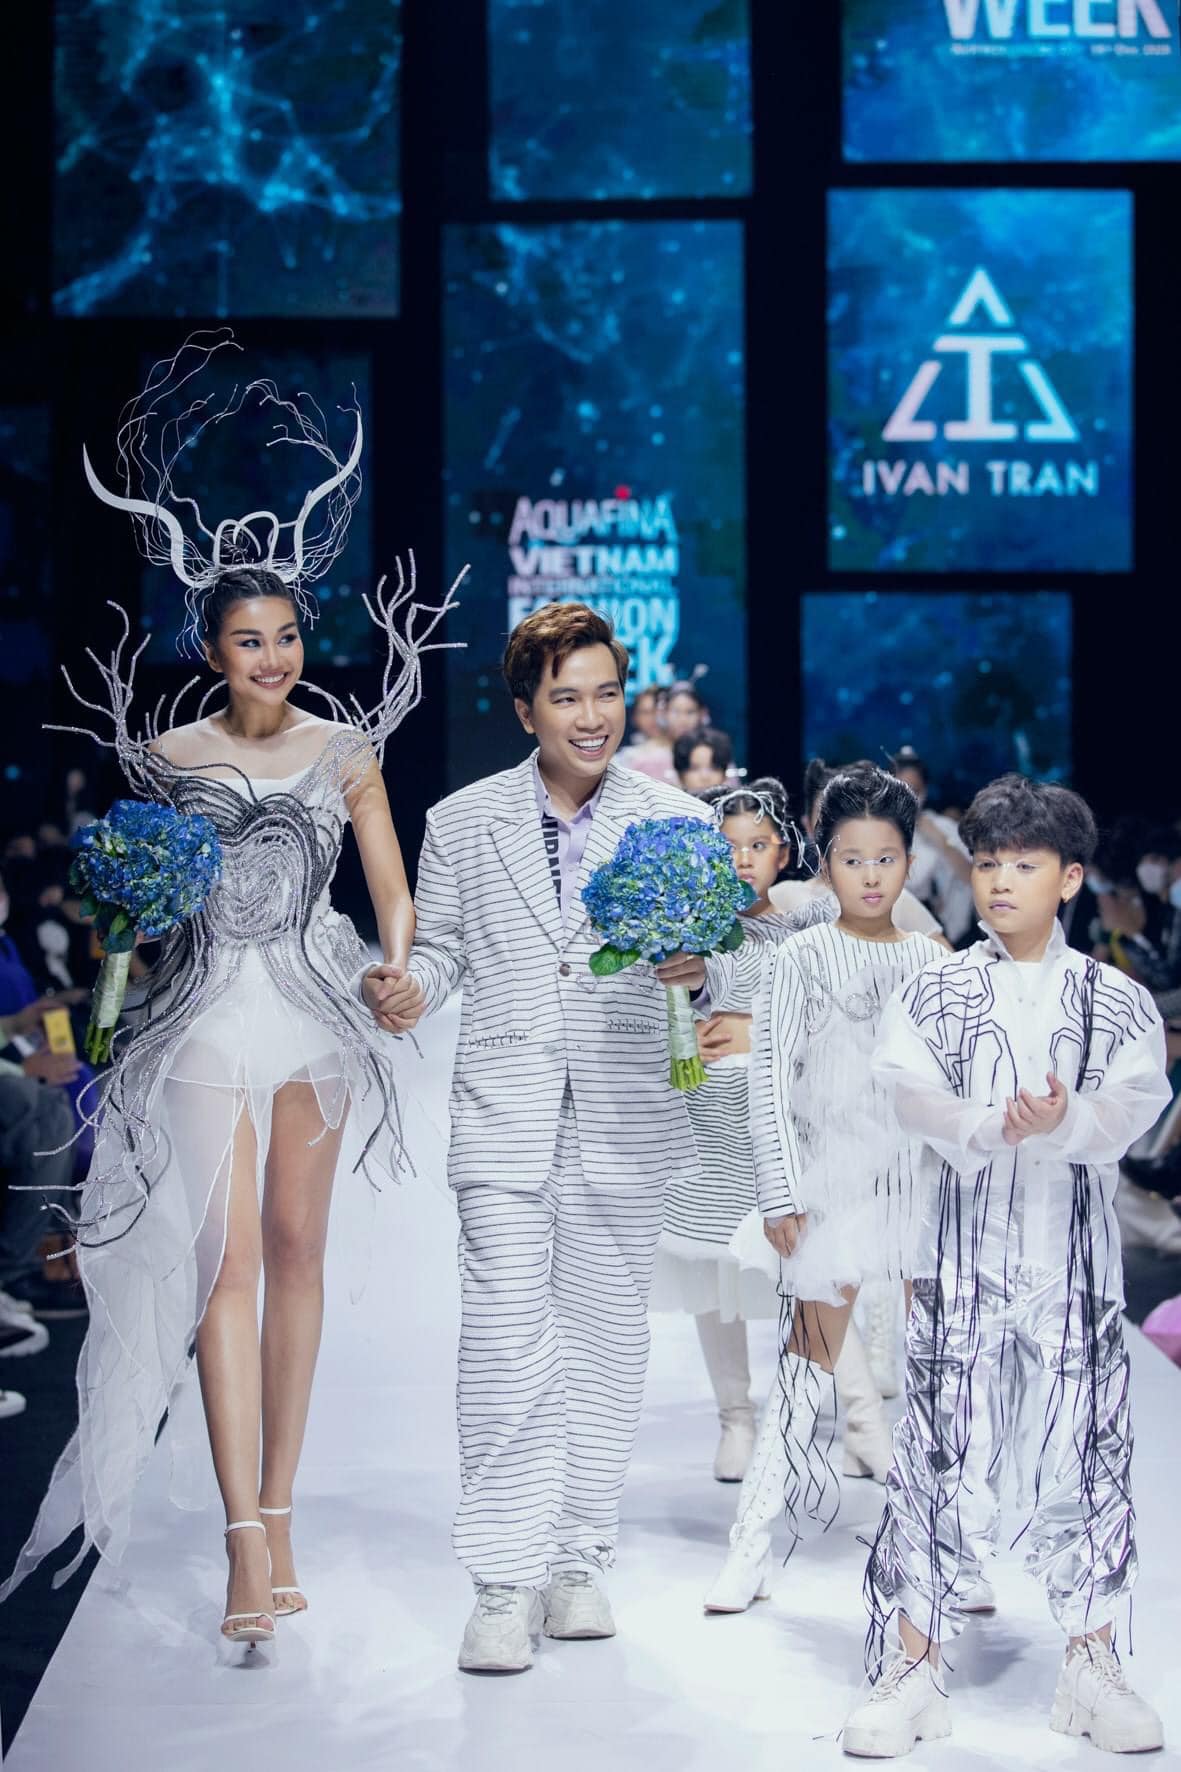 NTK Ivan Trần sánh bước cùng Thanh Hằng tại Aquafina Fashion Week 2020 (Ảnh: The Face Vietnam)